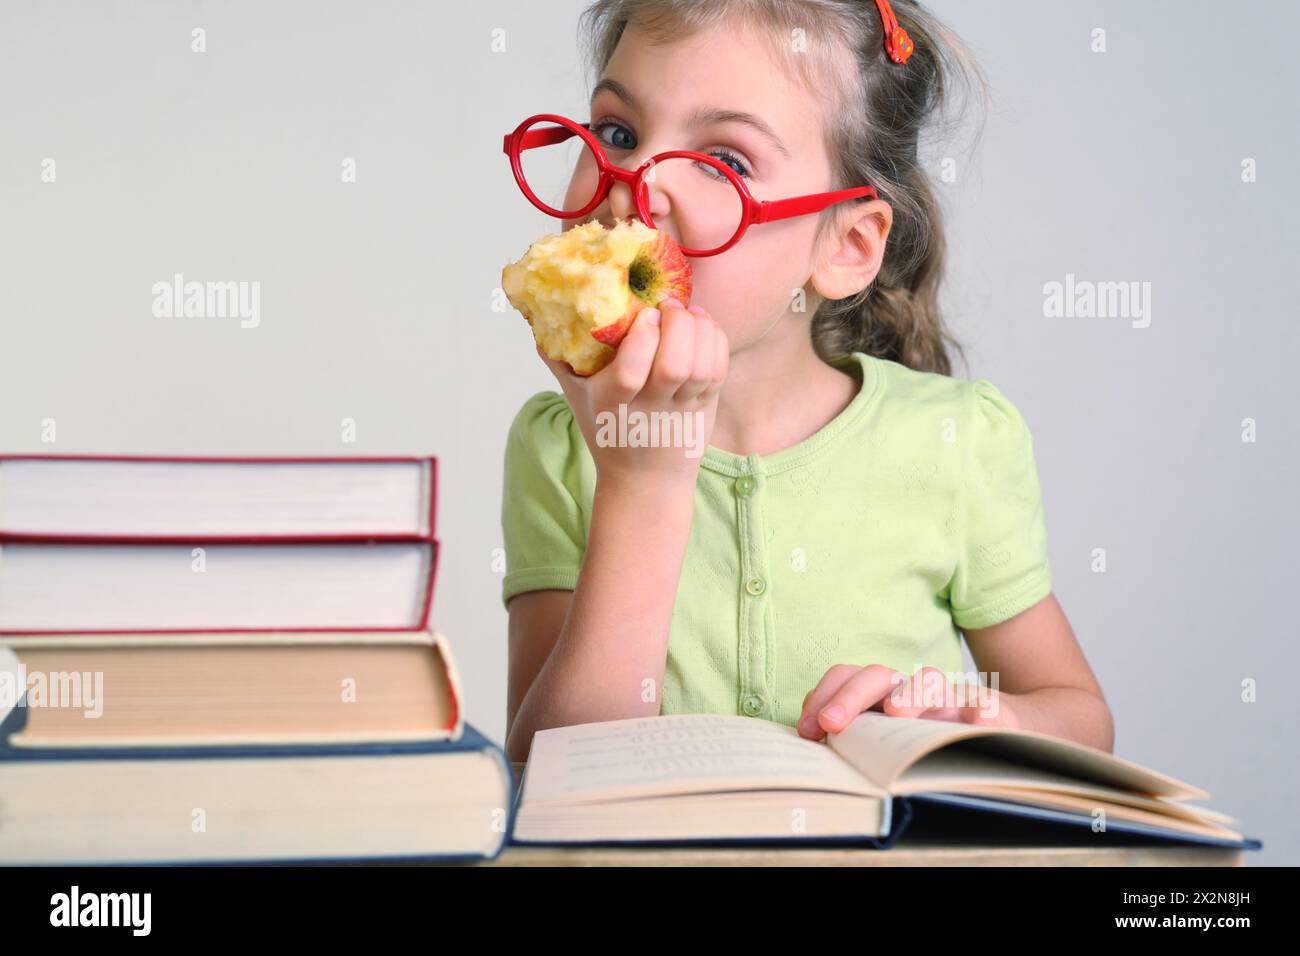 Little girl in red glasses bitten apple, seat near books Stock Photo